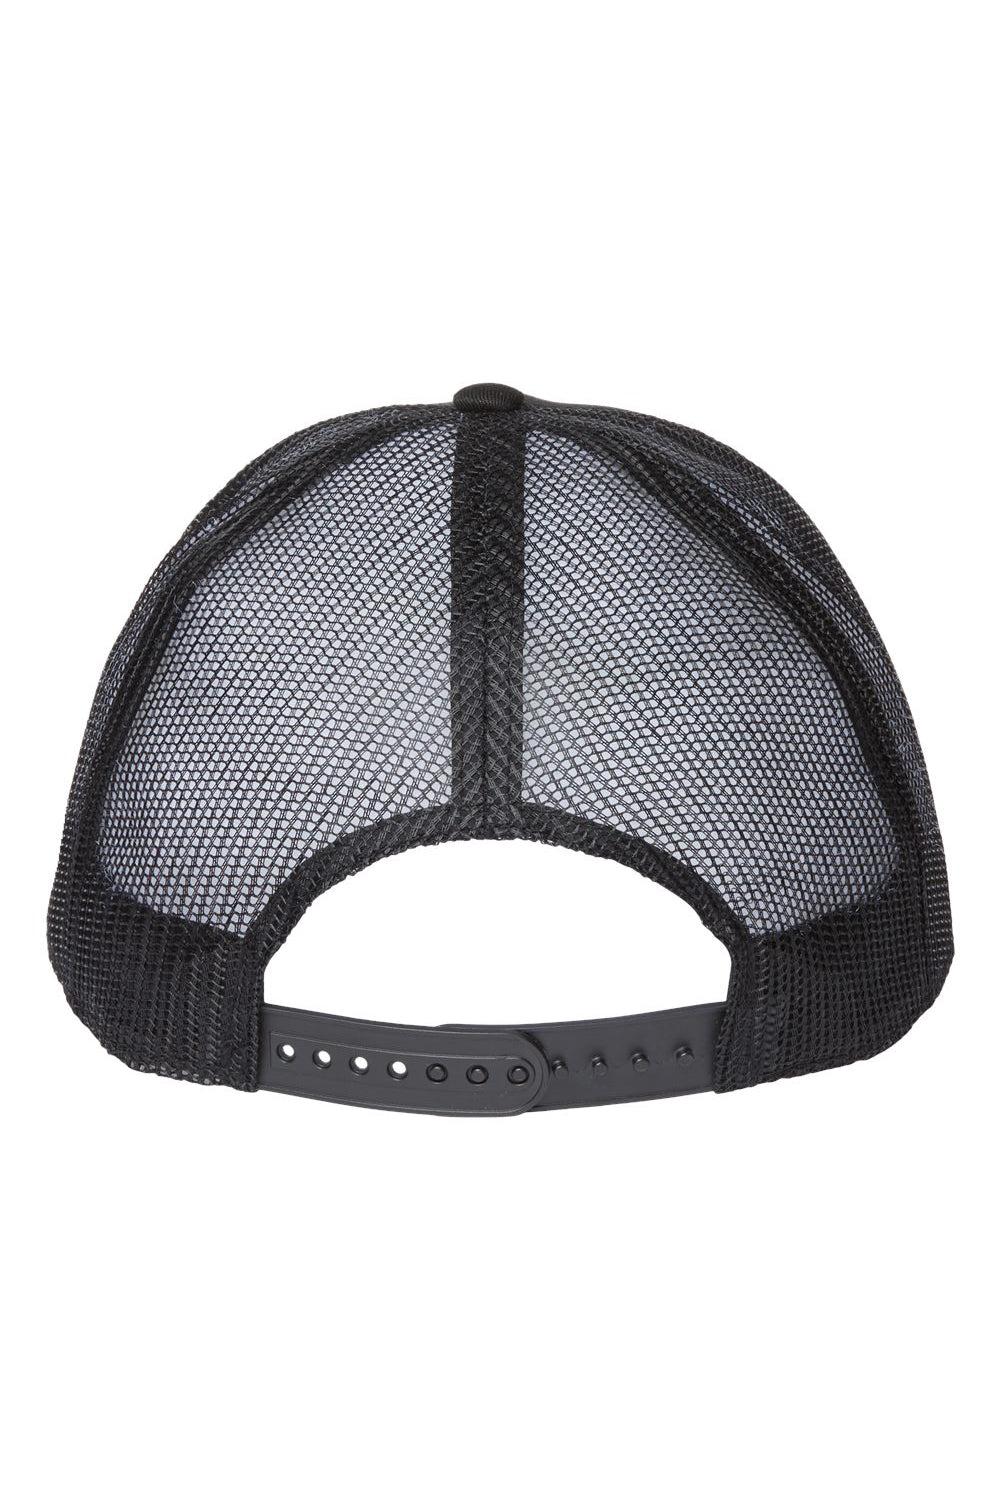 Atlantis Headwear ZION Mens Sustainable Snapback Trucker Hat Black/Black Flat Back